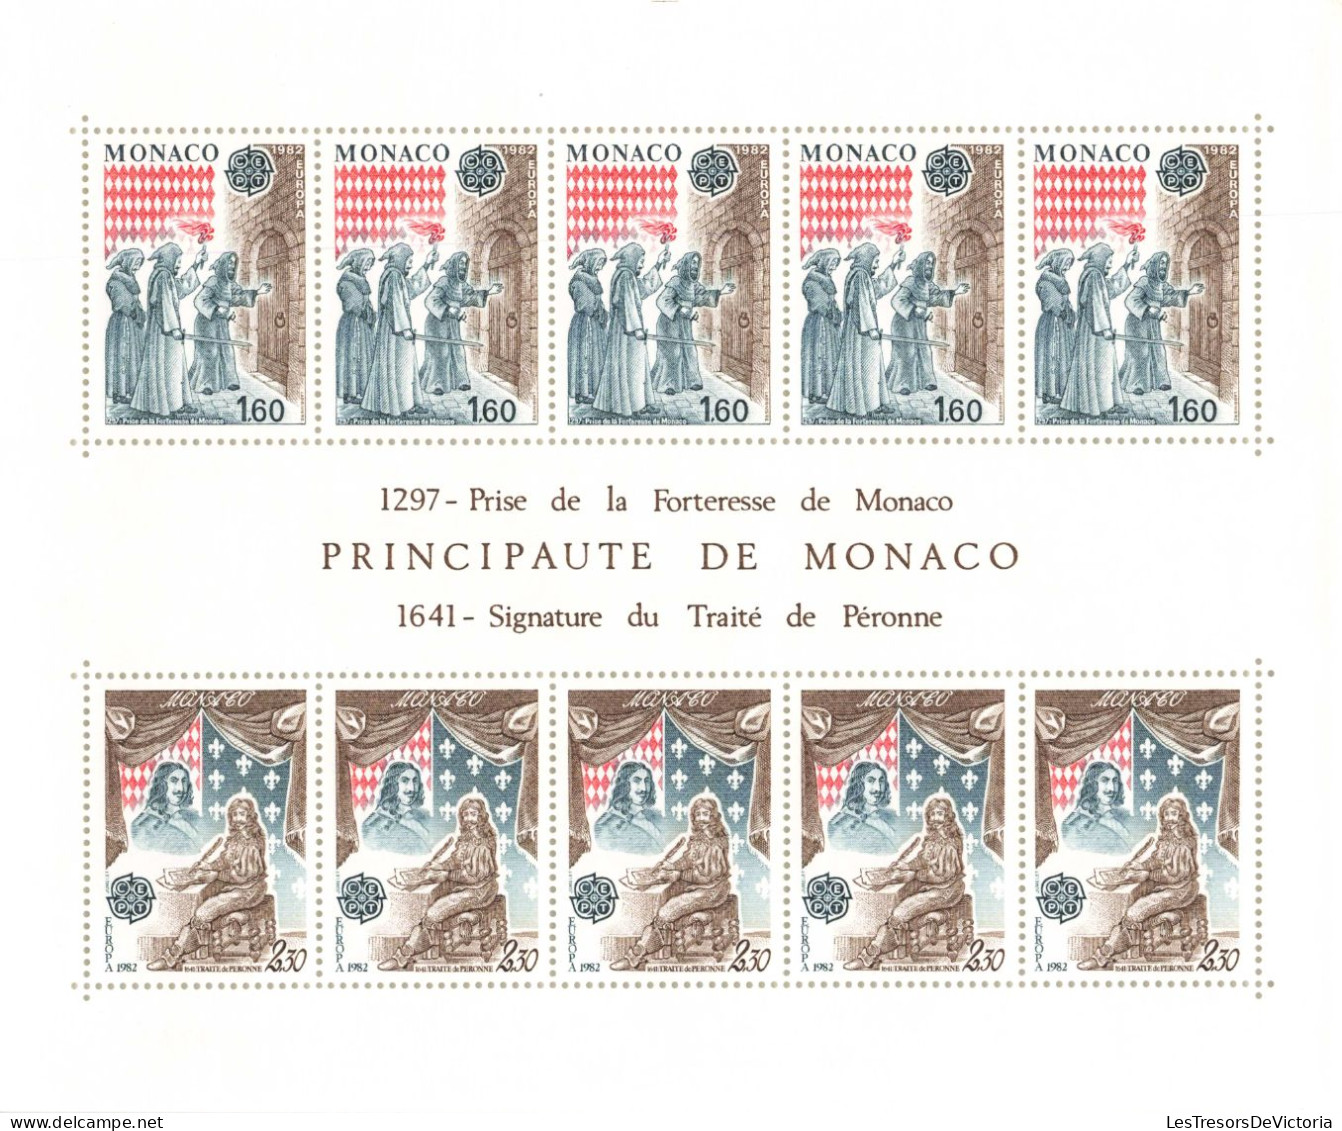 Monaco - Blocs MNH * - 1982 - 1297 Prise De La Forteresse De Monaco - 1641 Signature Du Traité De Péronne - Blocks & Sheetlets